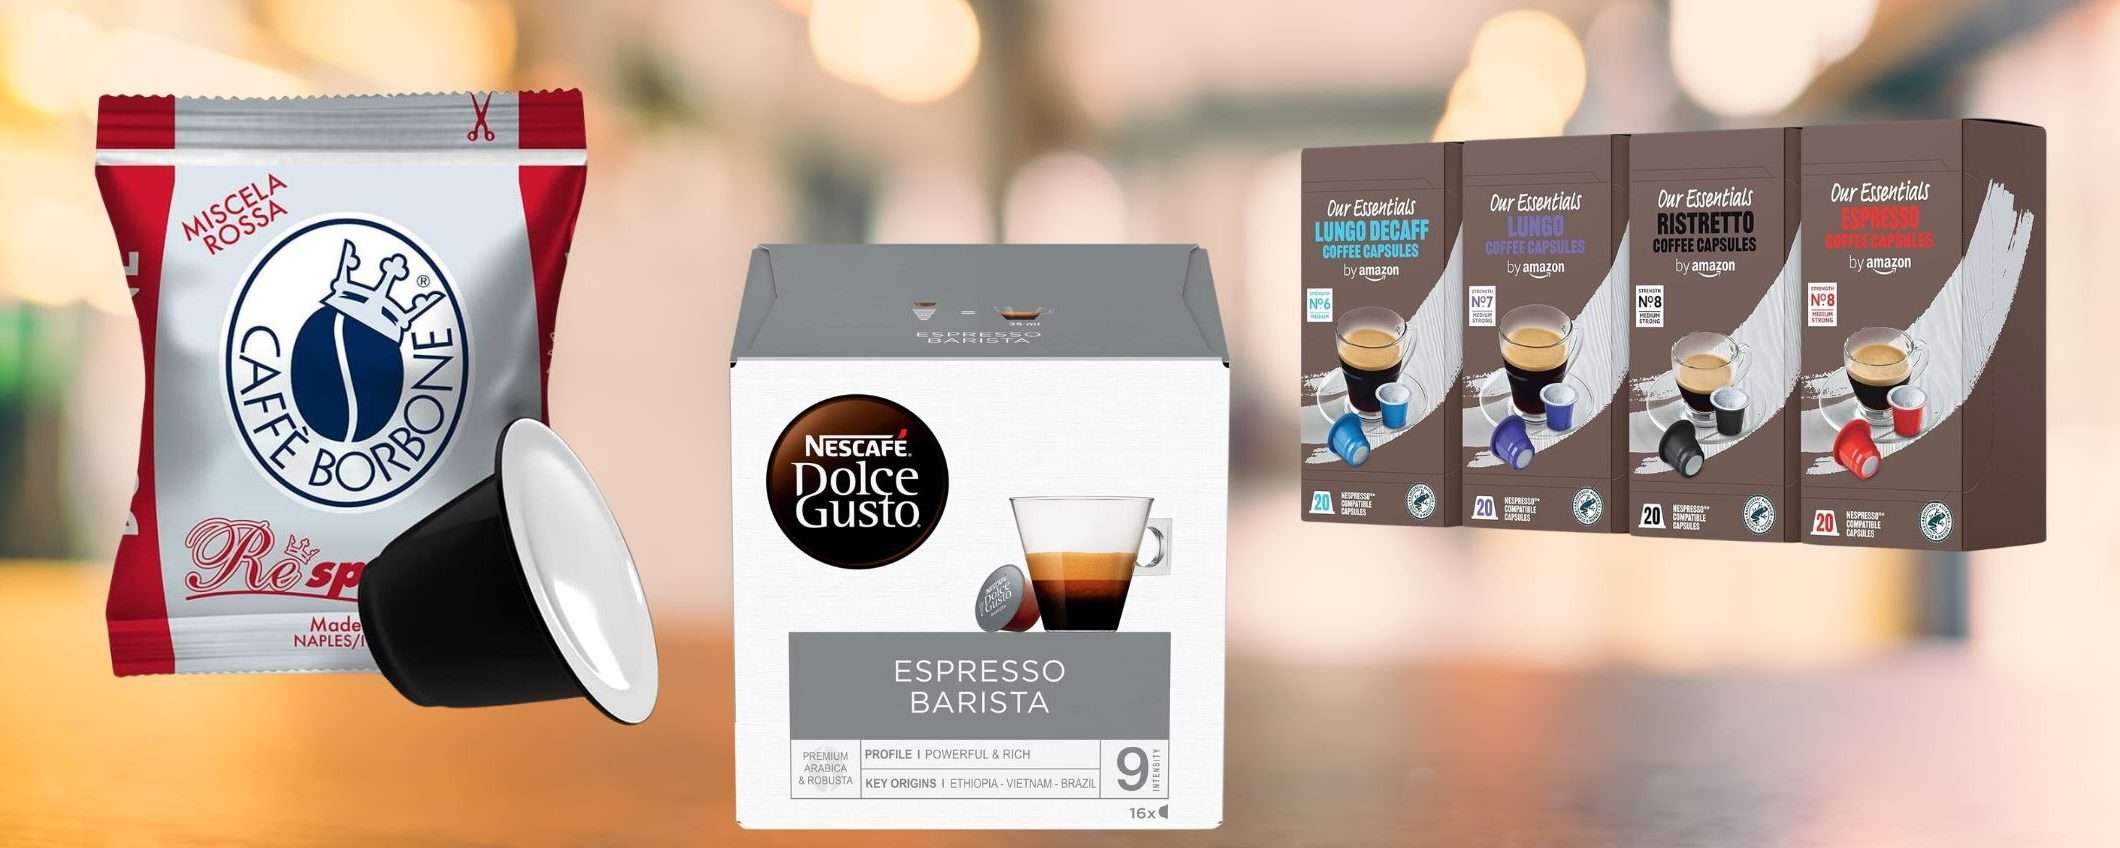 Caffè in capsule e cialde: Nescafé e Borbone per le offerte di primavera